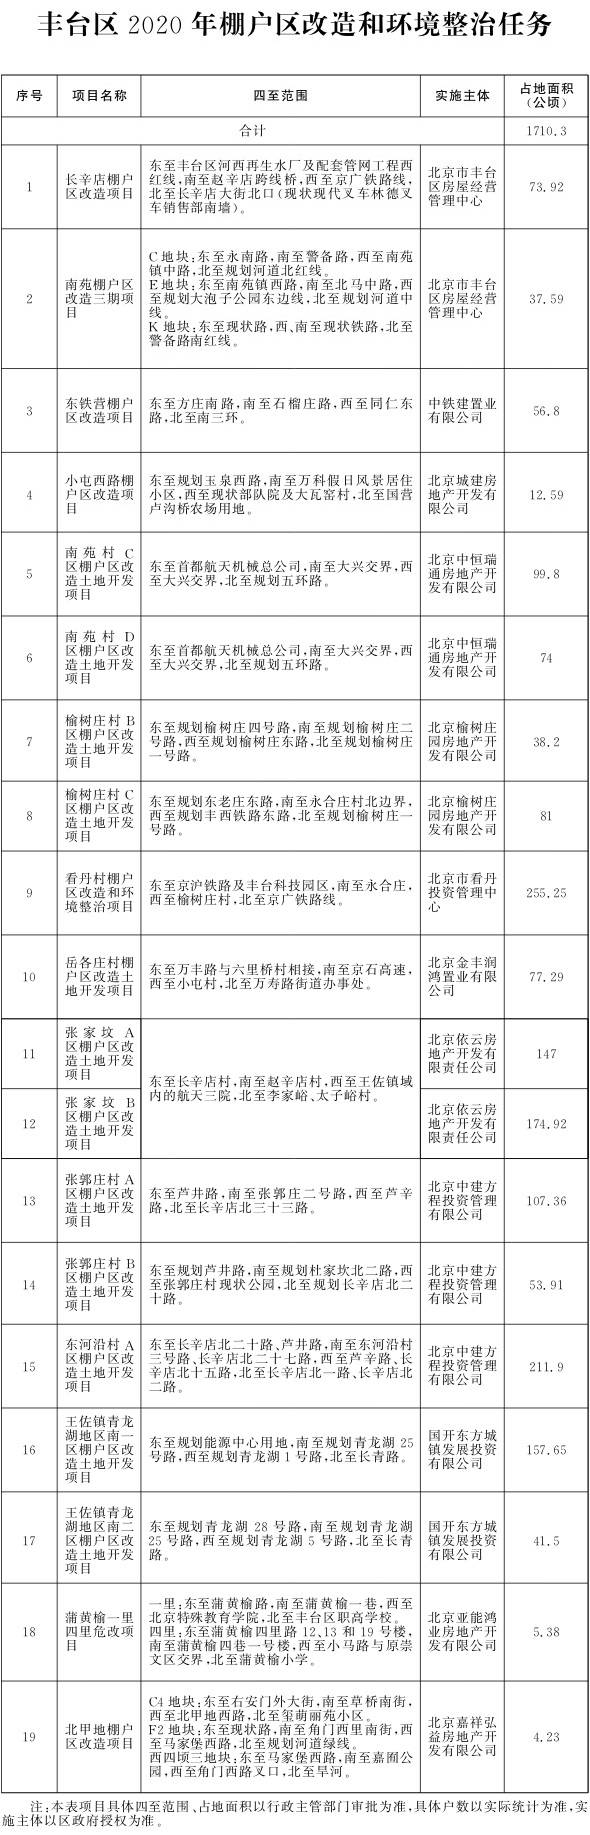 北京市人民政府办公厅关于印发《北京市2020年棚户区改造和环境整治任务》的通知